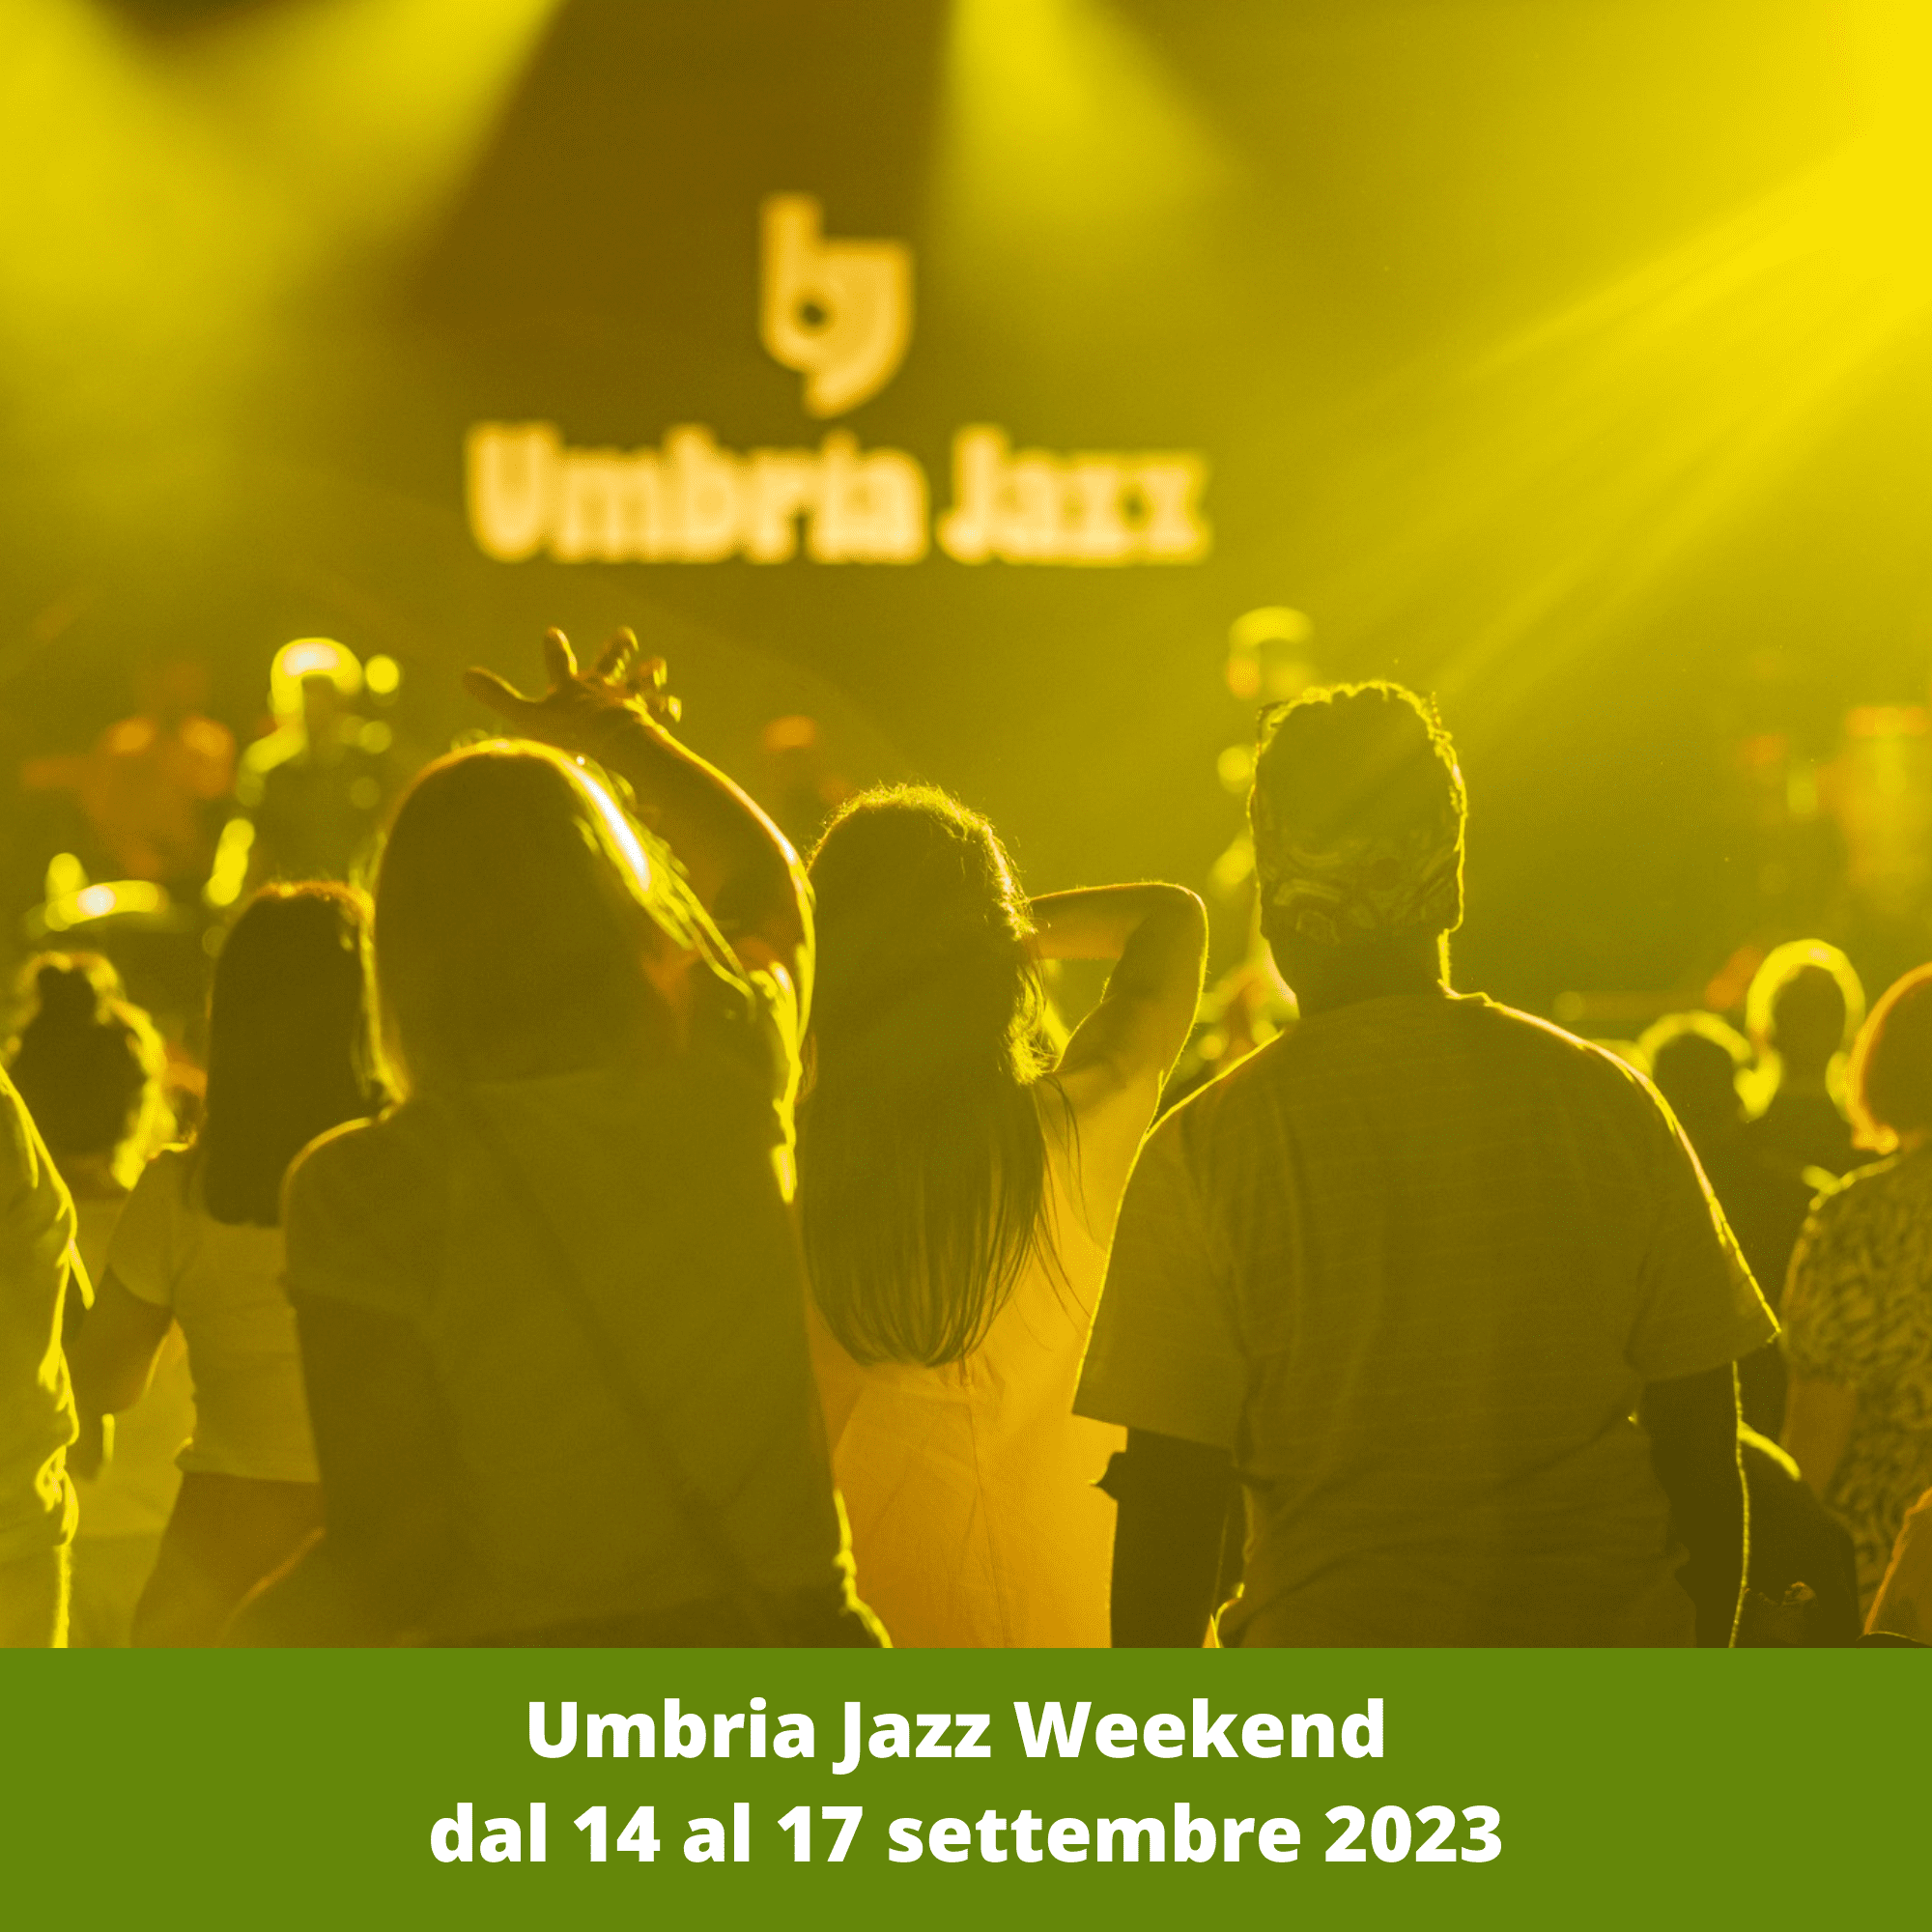 Umbria Jazz Weekenddal 14 al 17 settembre 2023